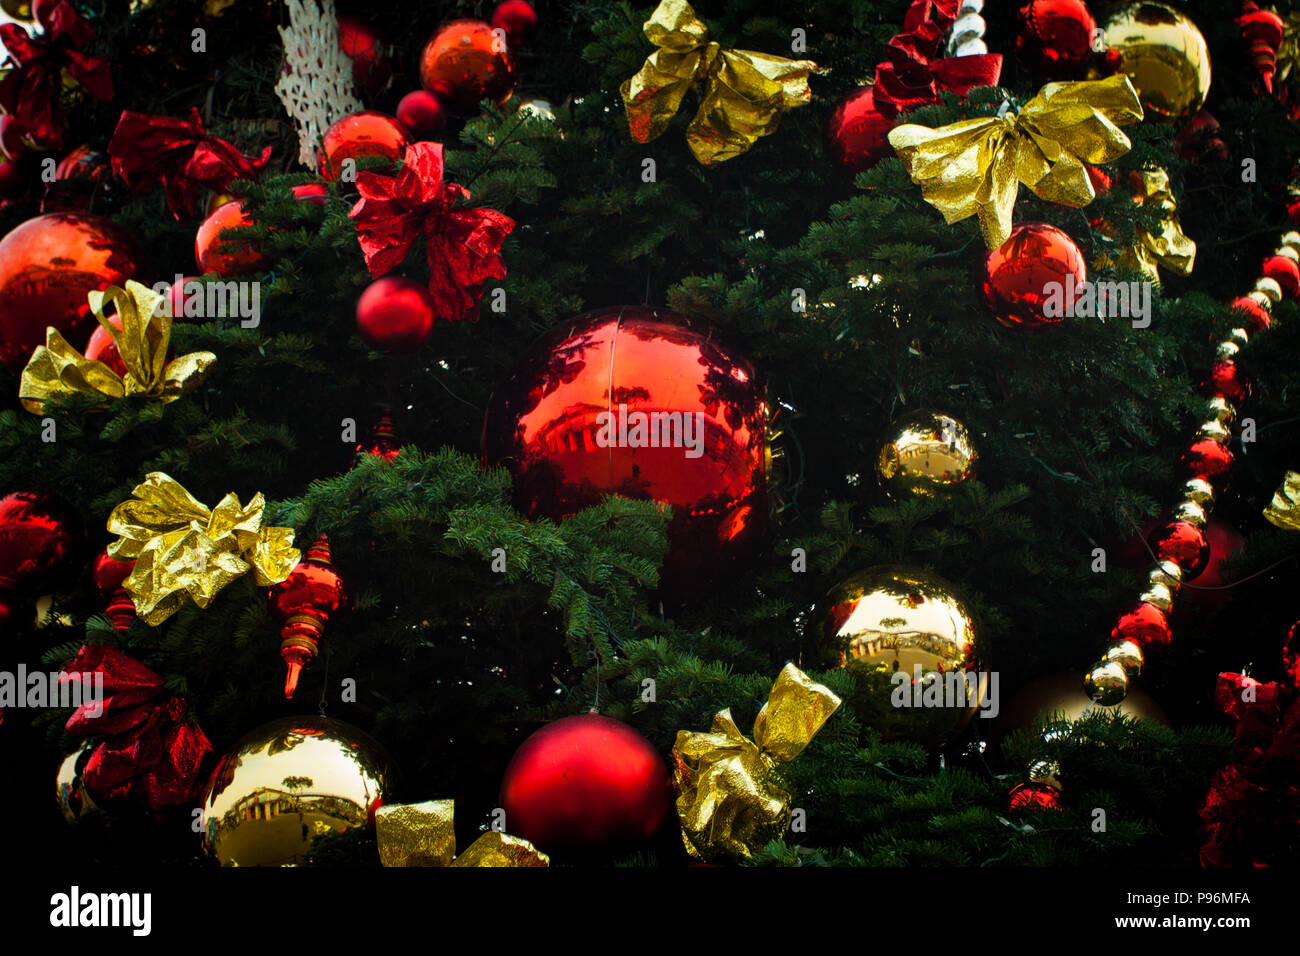 Albero Di Natale Rosso E Verde.Albero Di Natale Decor Oro Rosso E Verde Foto Stock Alamy